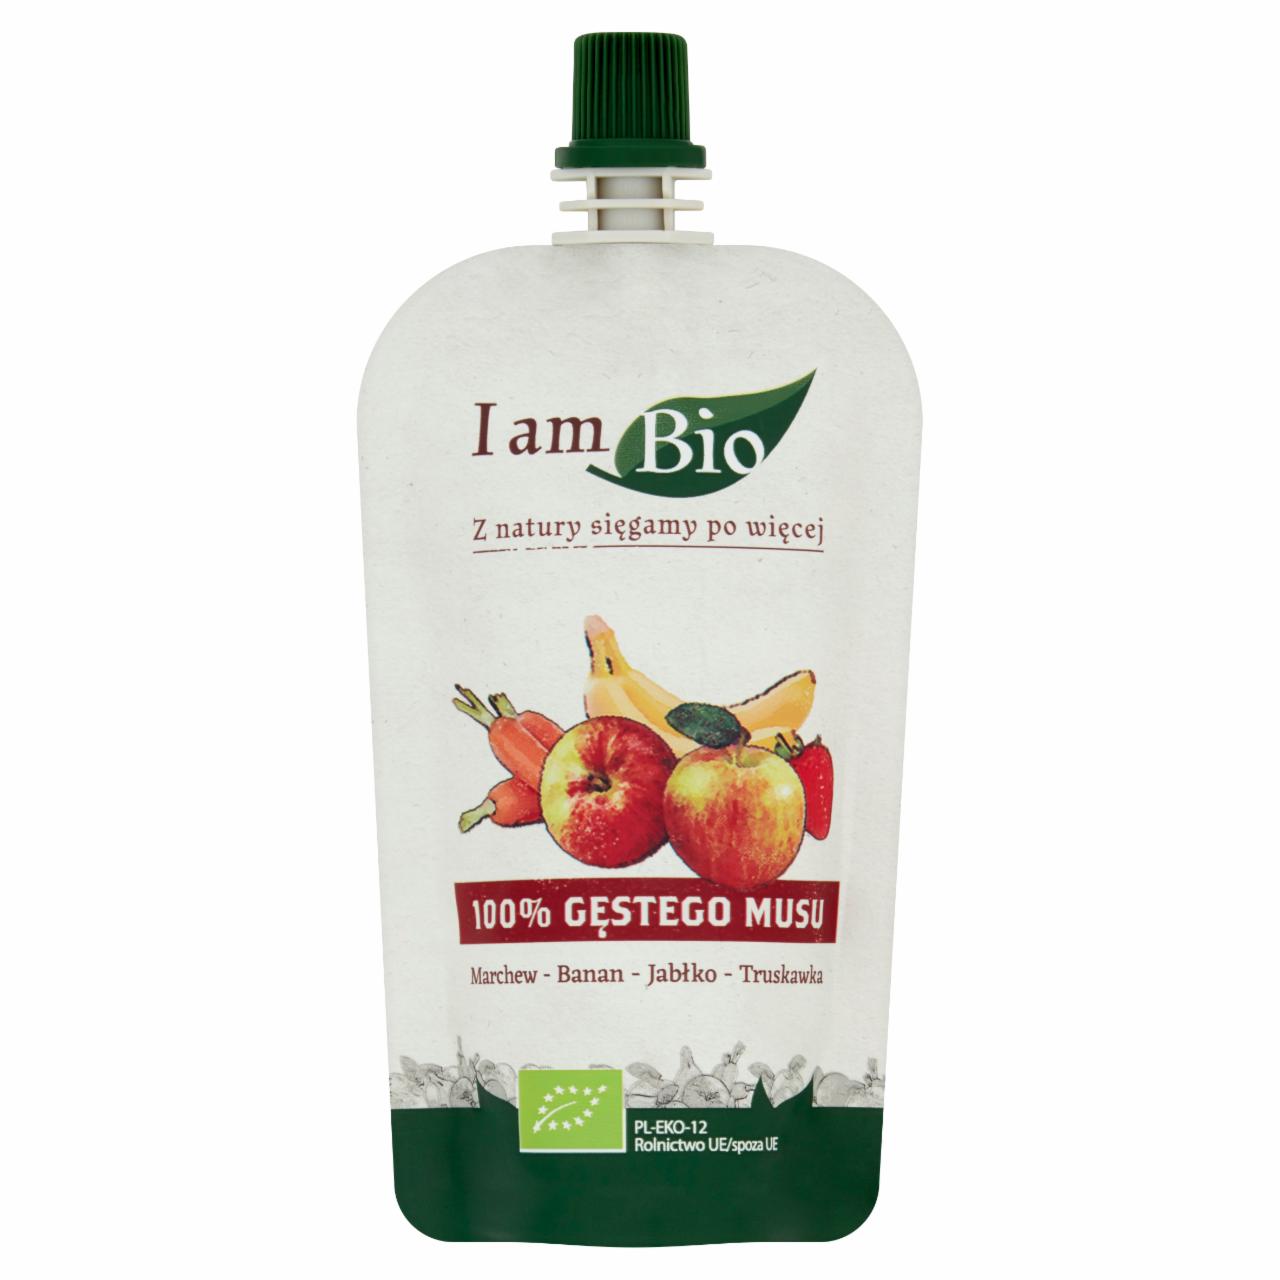 Zdjęcia - I am Bio Przecier owocowo-warzywny z sokiem jabłkowym marchew-banan-jabłko-truskawka 100 g